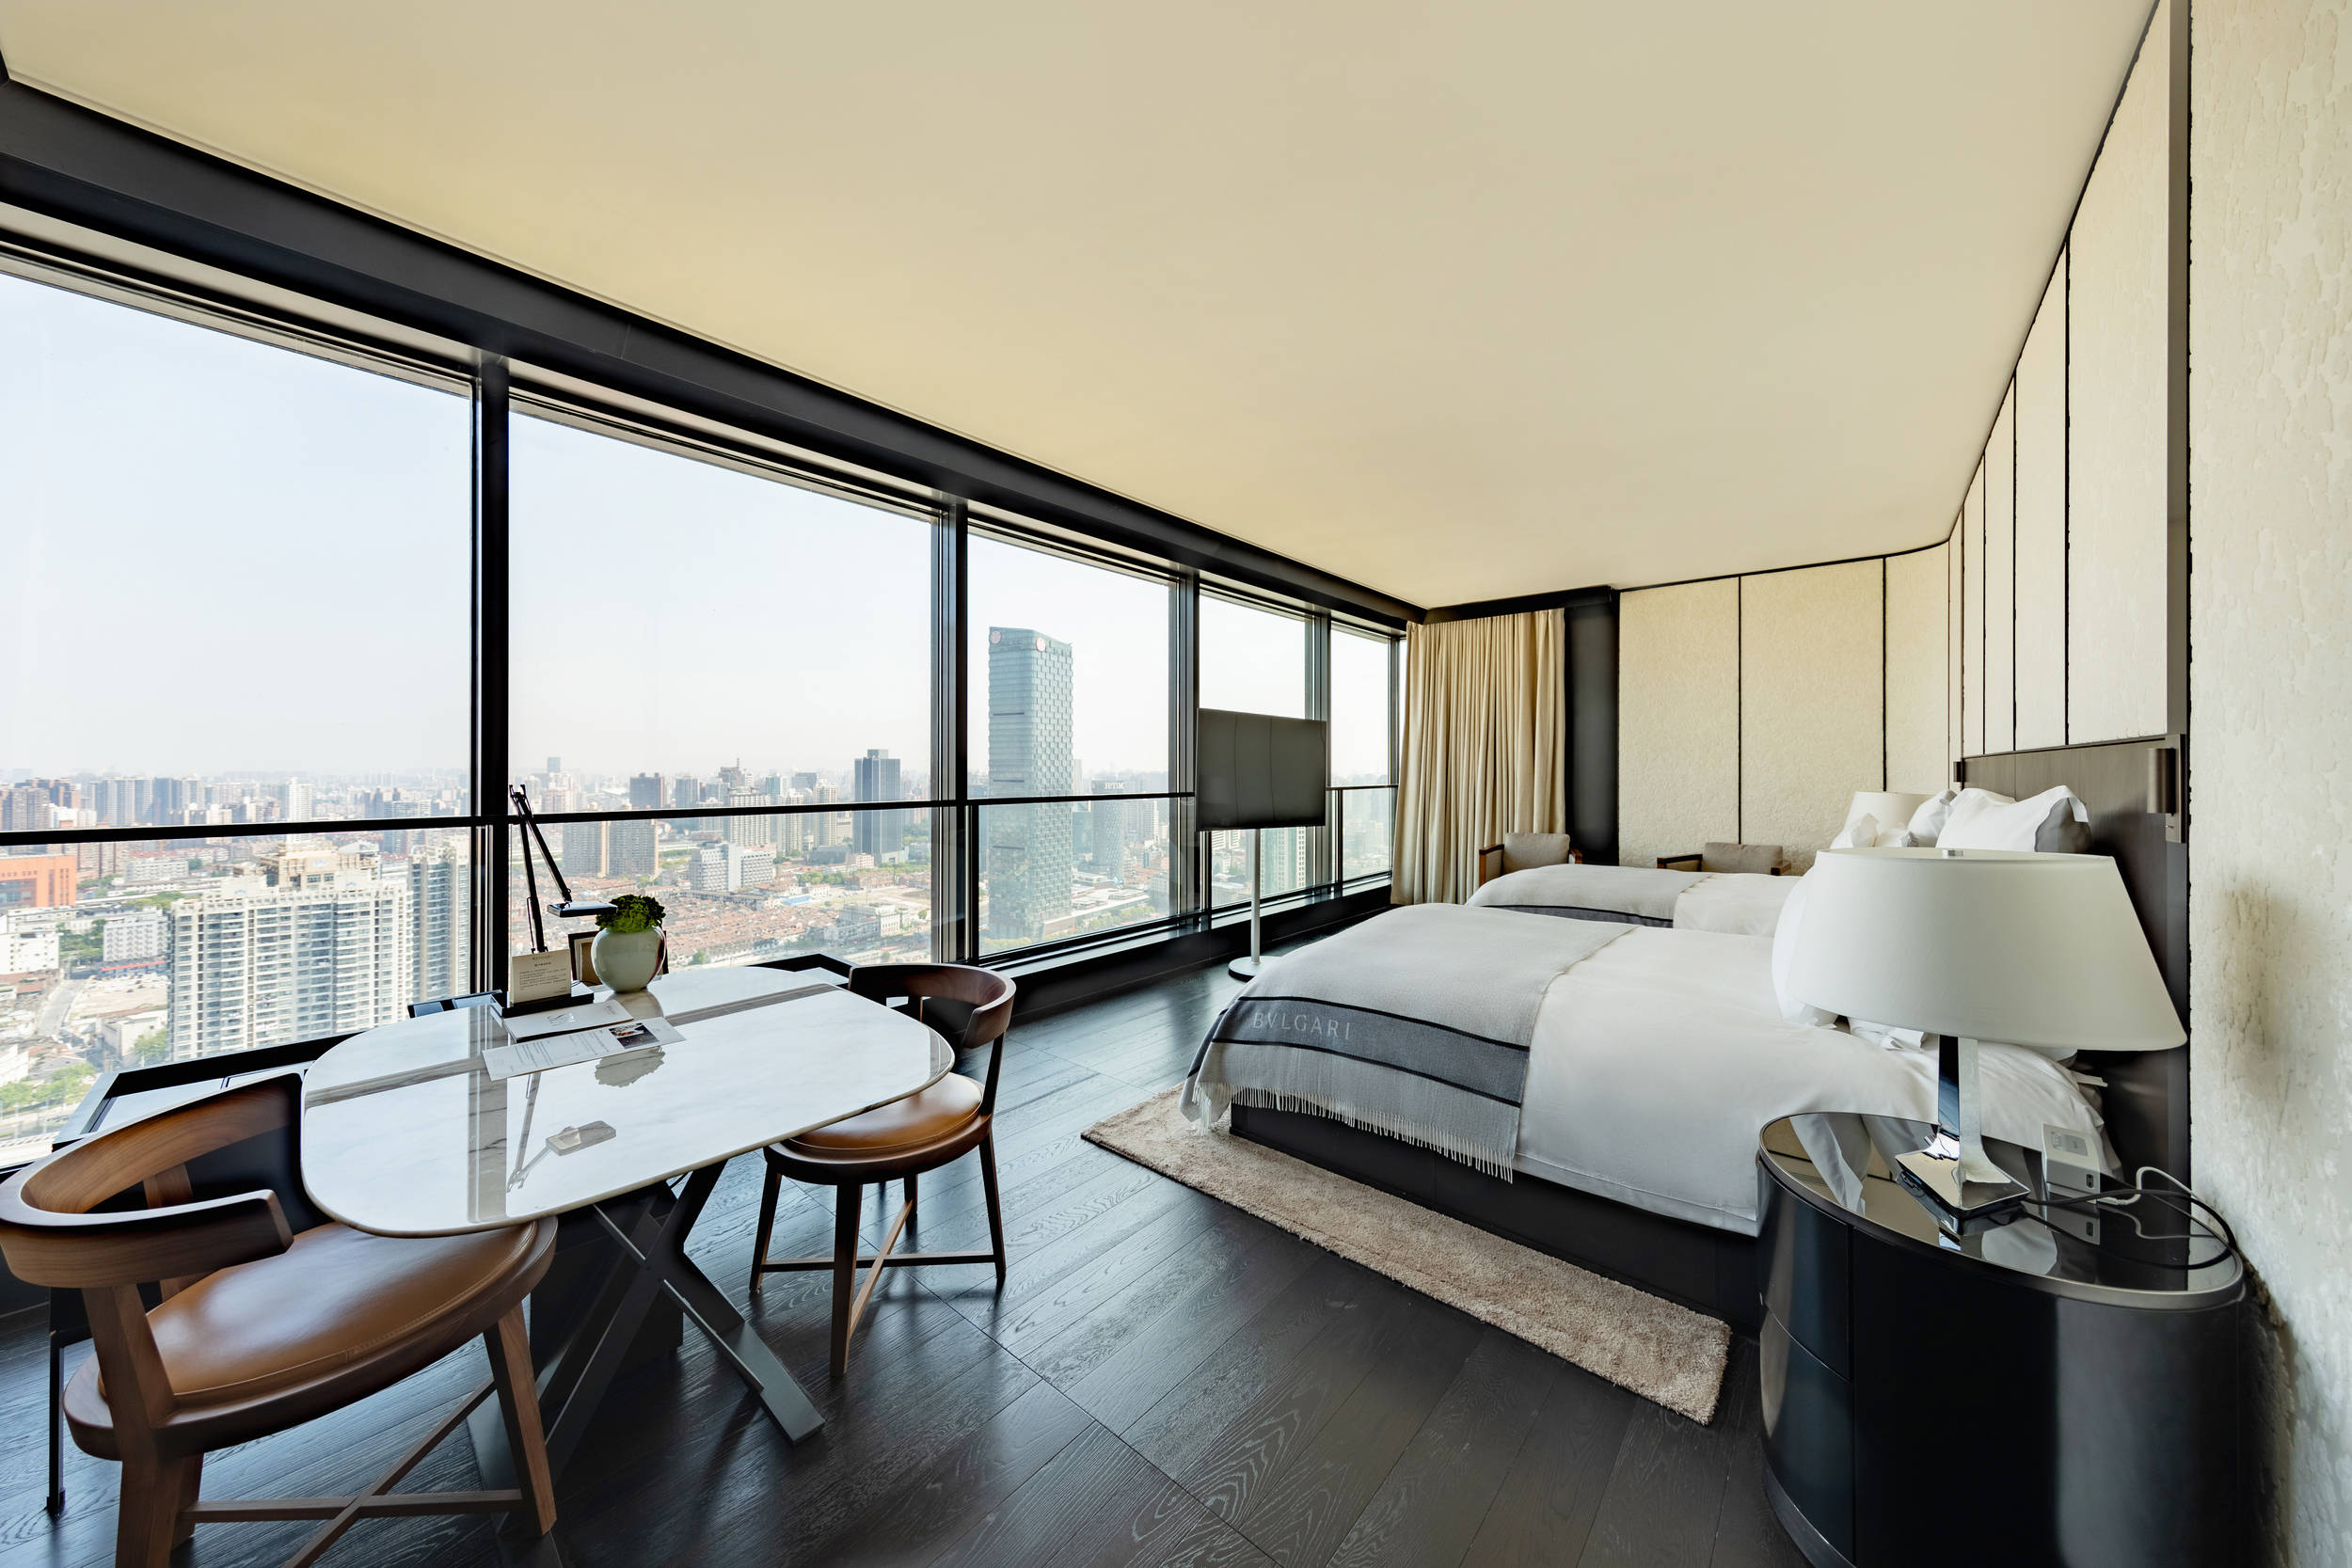 上海宝格丽酒店拥有 63间典雅客房与 19间甄选套房,设计师将当代